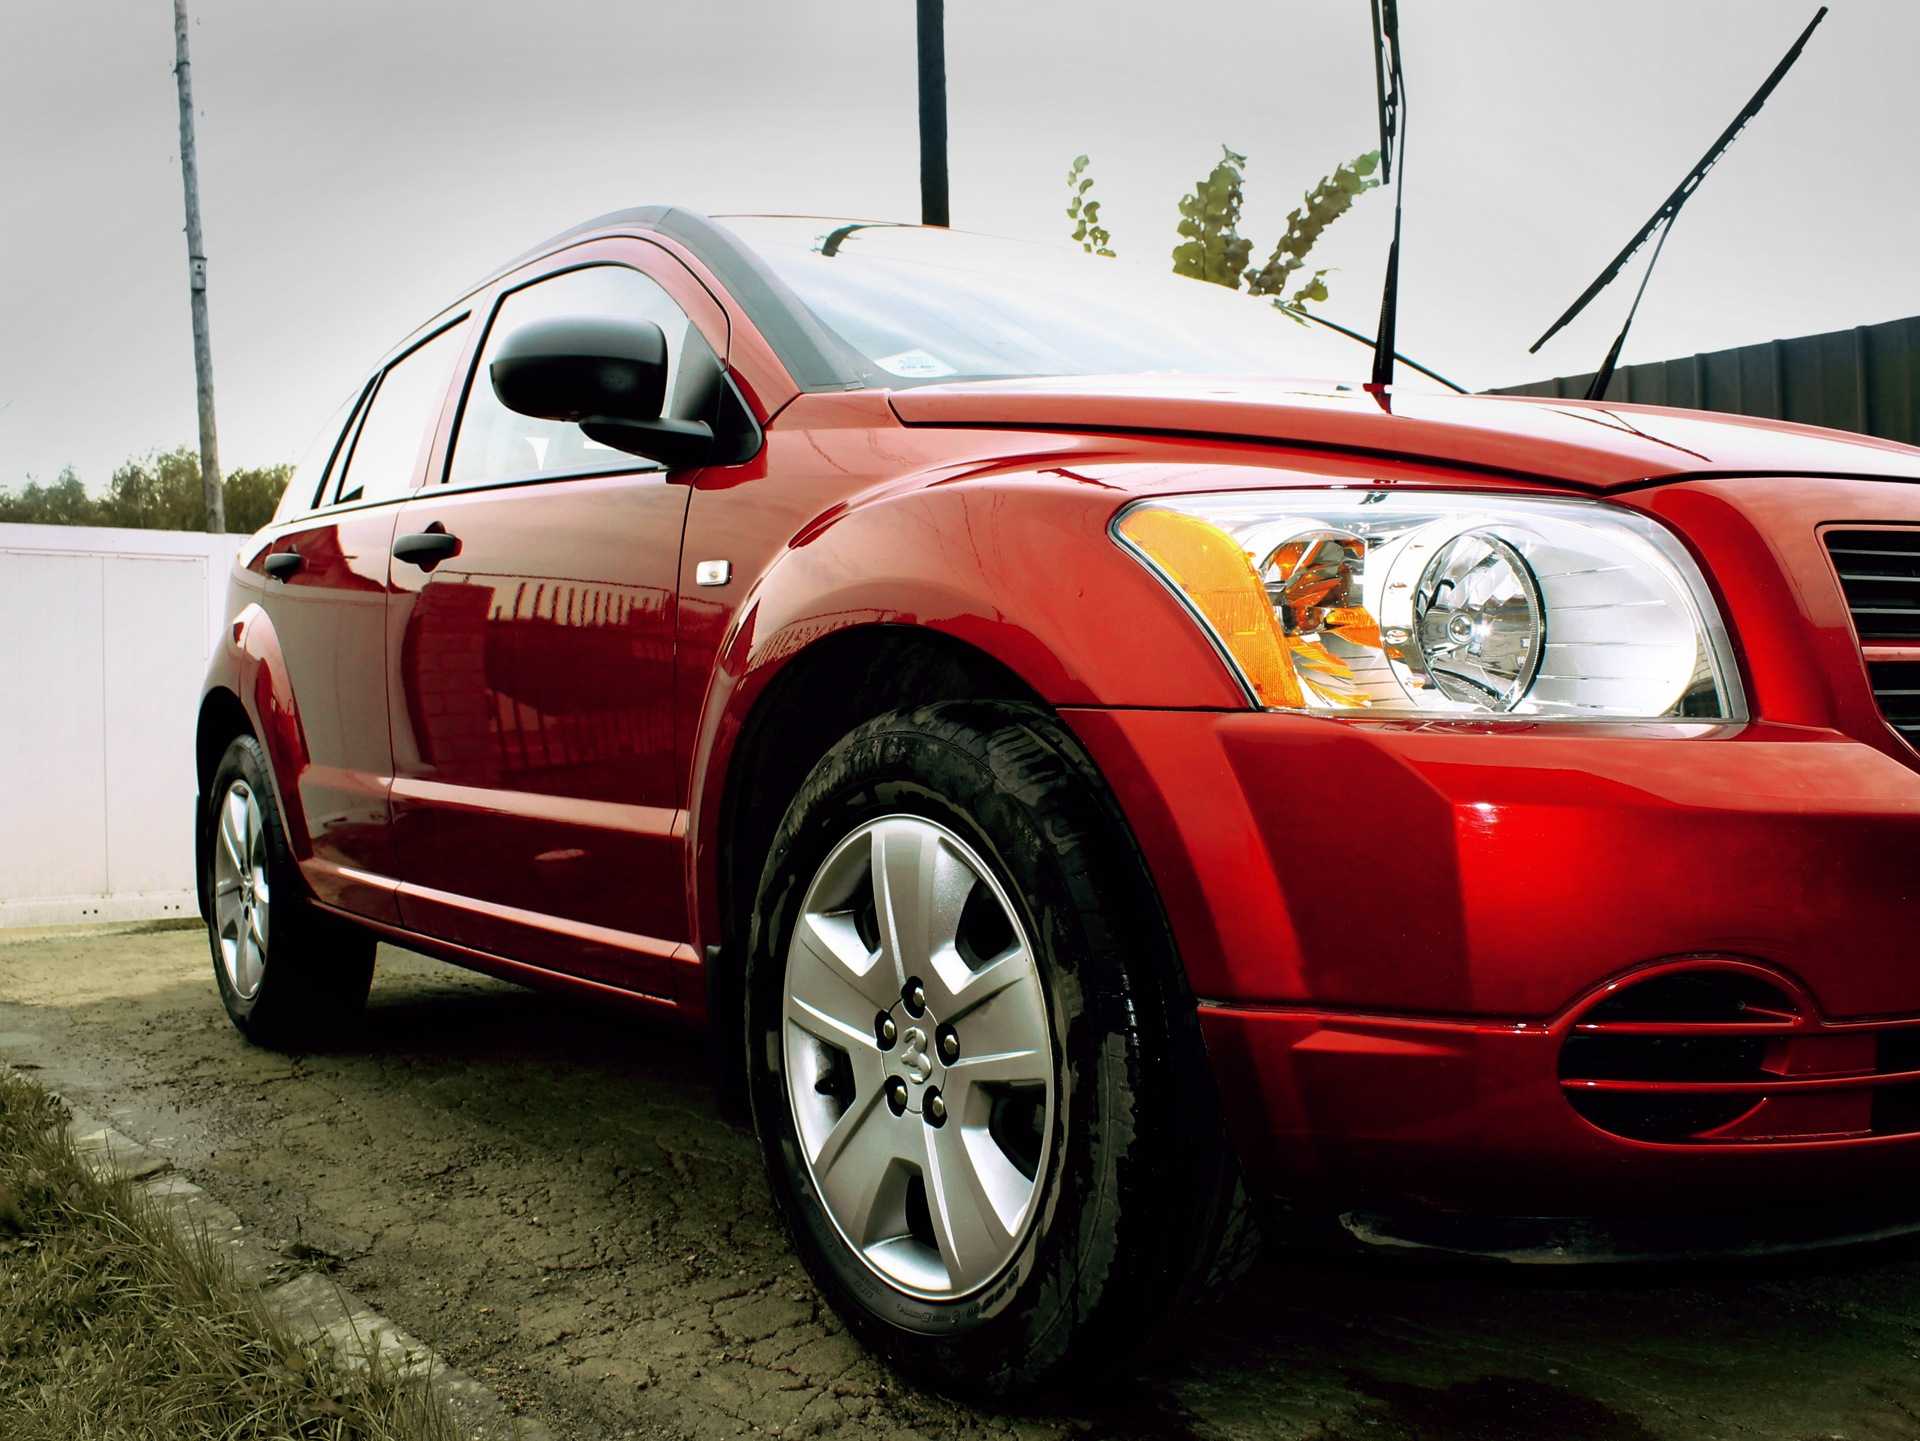 Dodge caliber 2009-2013 цена, технические характеристики, фото, видео тест-драйв